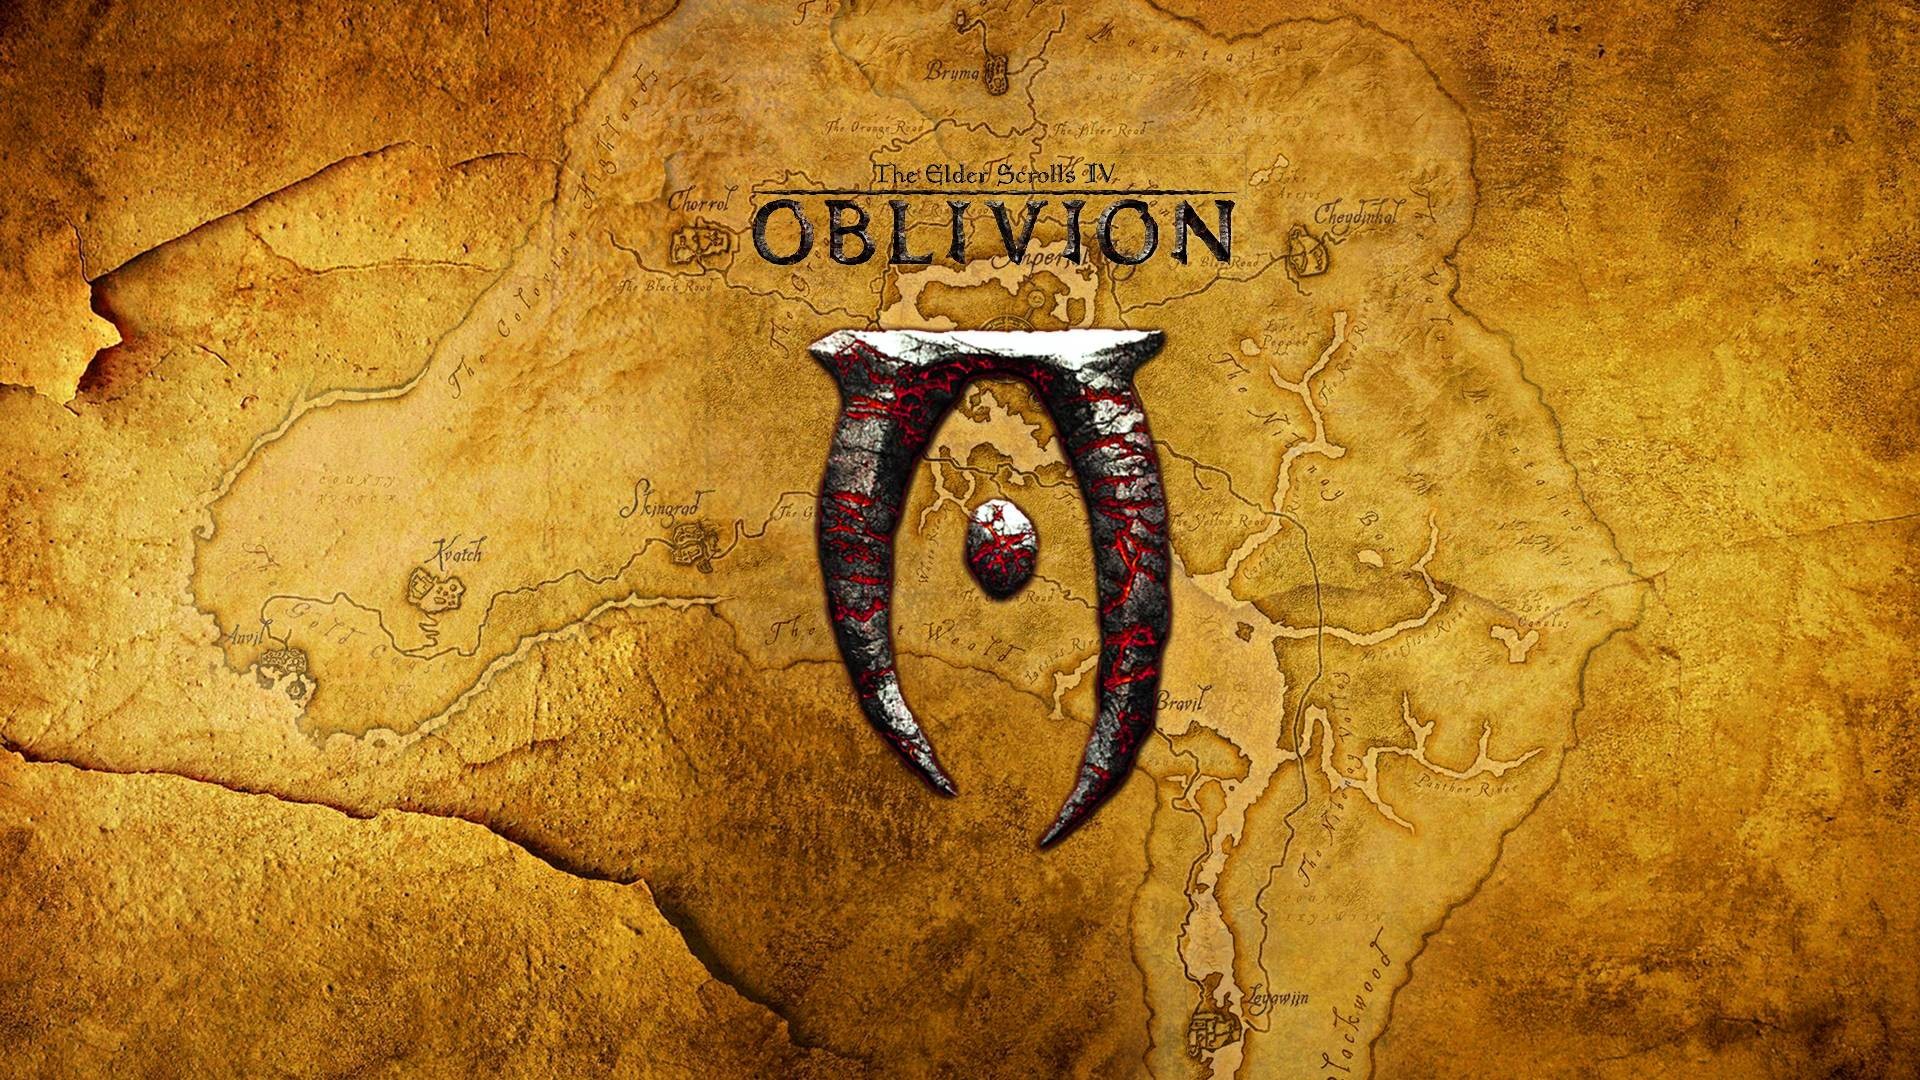 The Elder Scrolls Iv Oblivion Re Pcgamesarchive